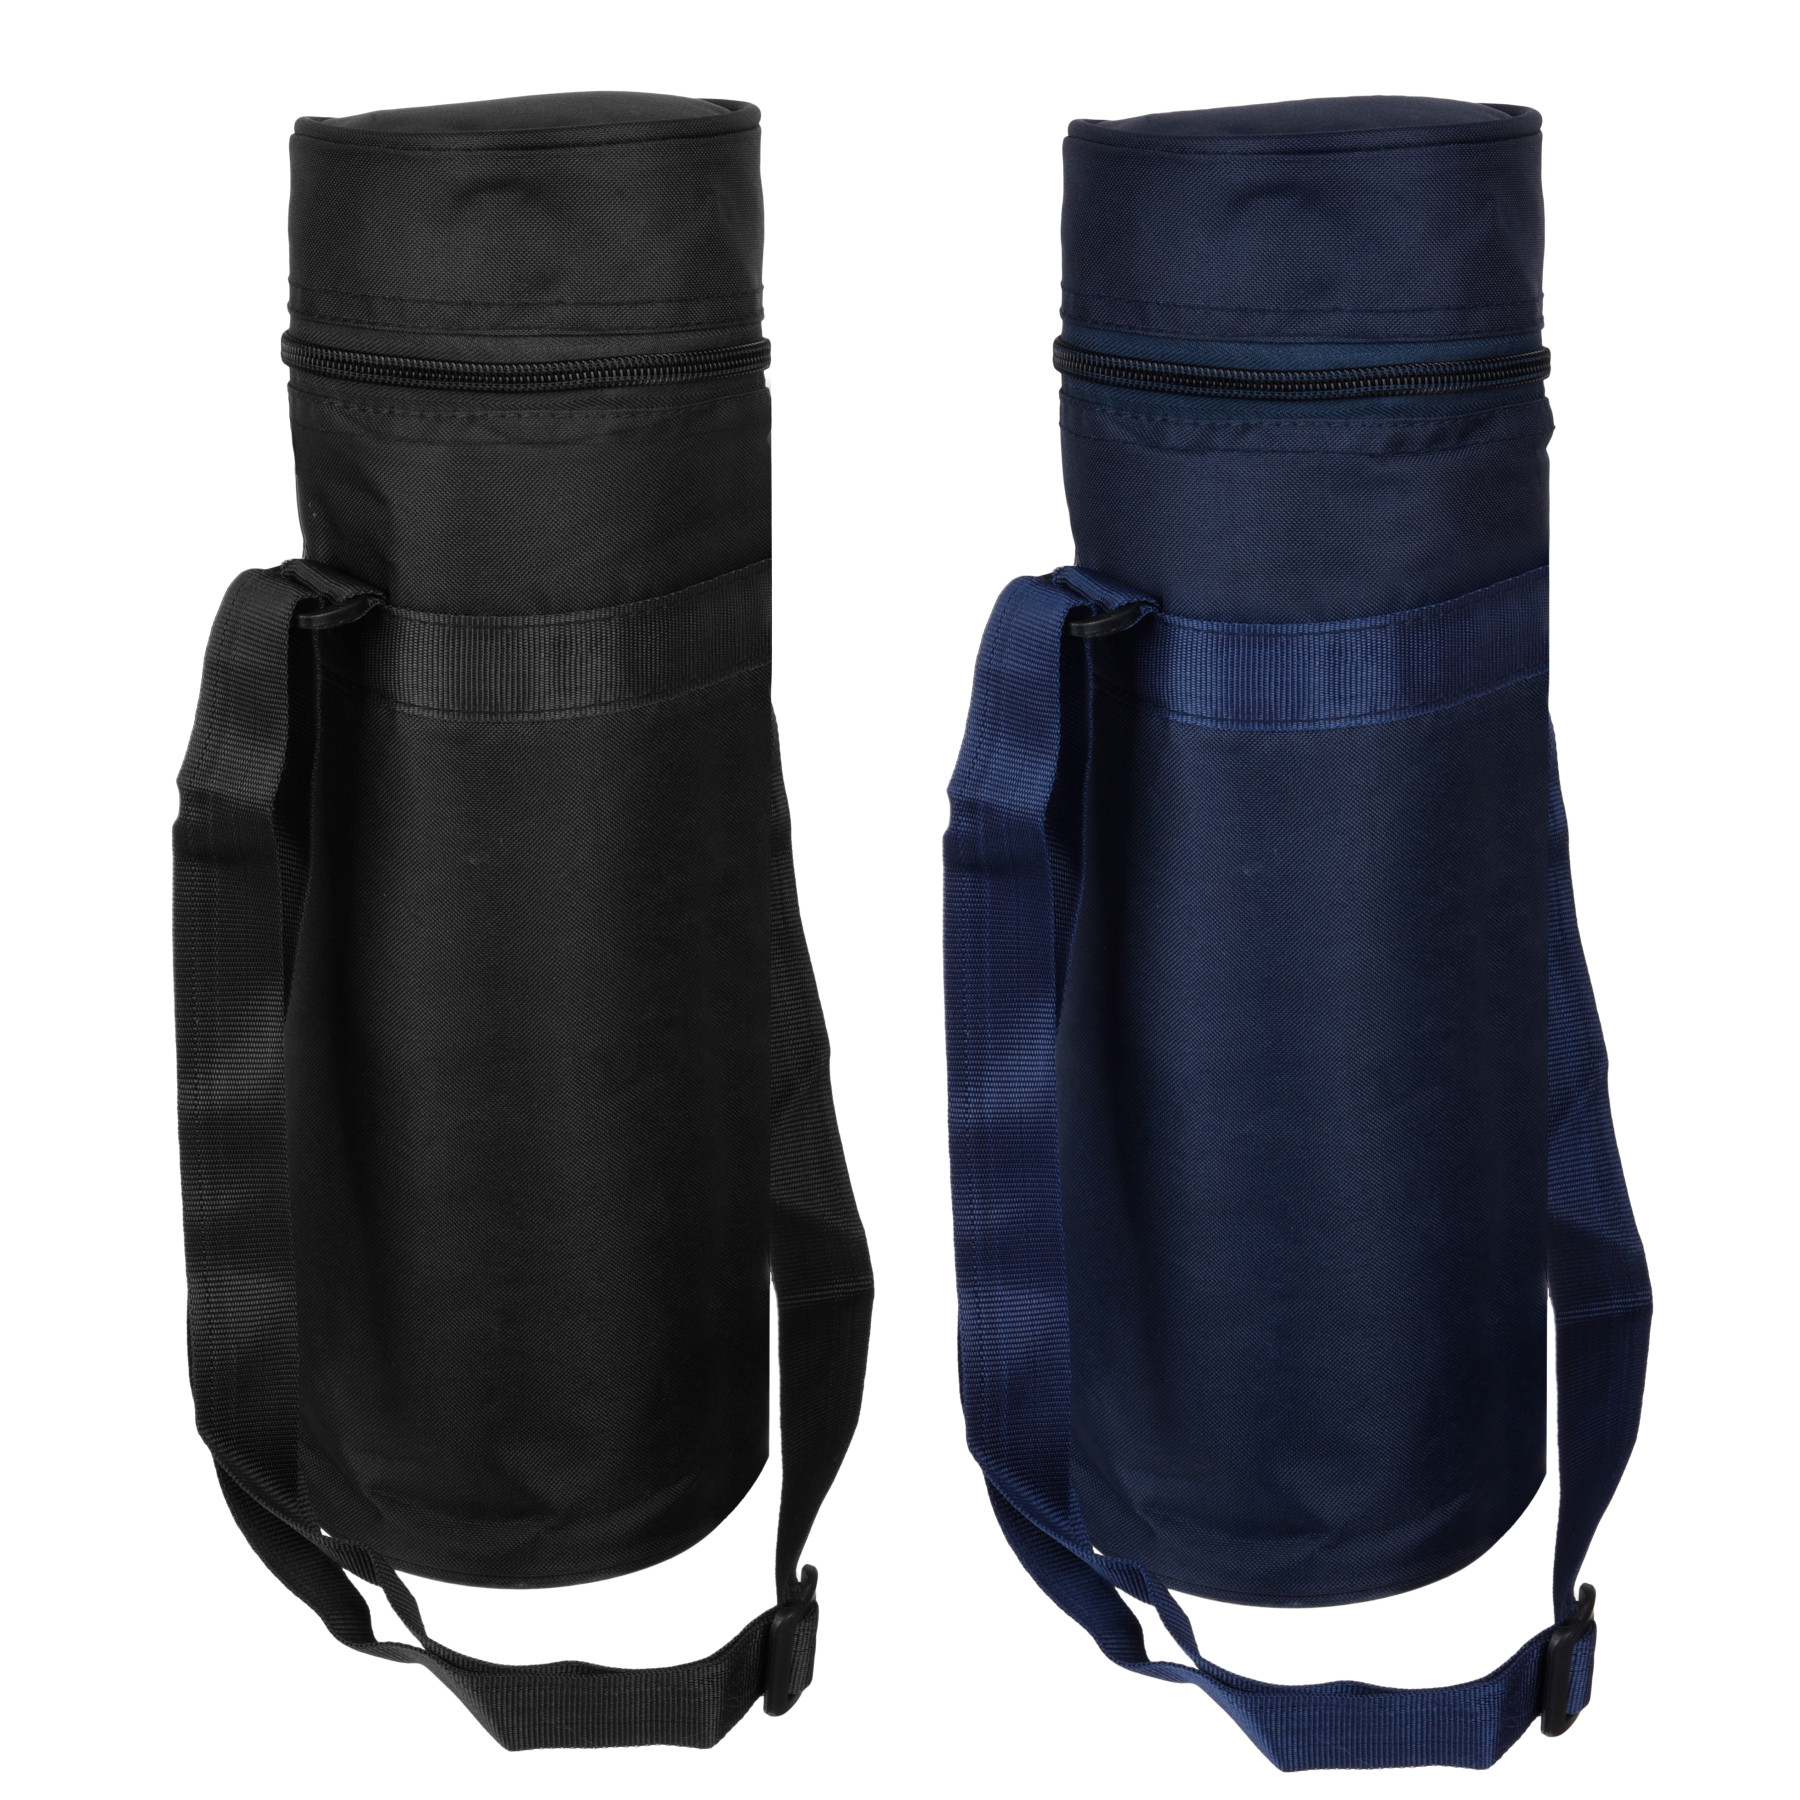 Kuber Industries Bottle Bag | Travel Water Bottle Bag | Bottle Protector Bag | Water Bottle Carrier Bag | Bottle Carry Bag | Adjustable Strap & Zipper Closure | 1 LTR | Pack of 2 | Multi